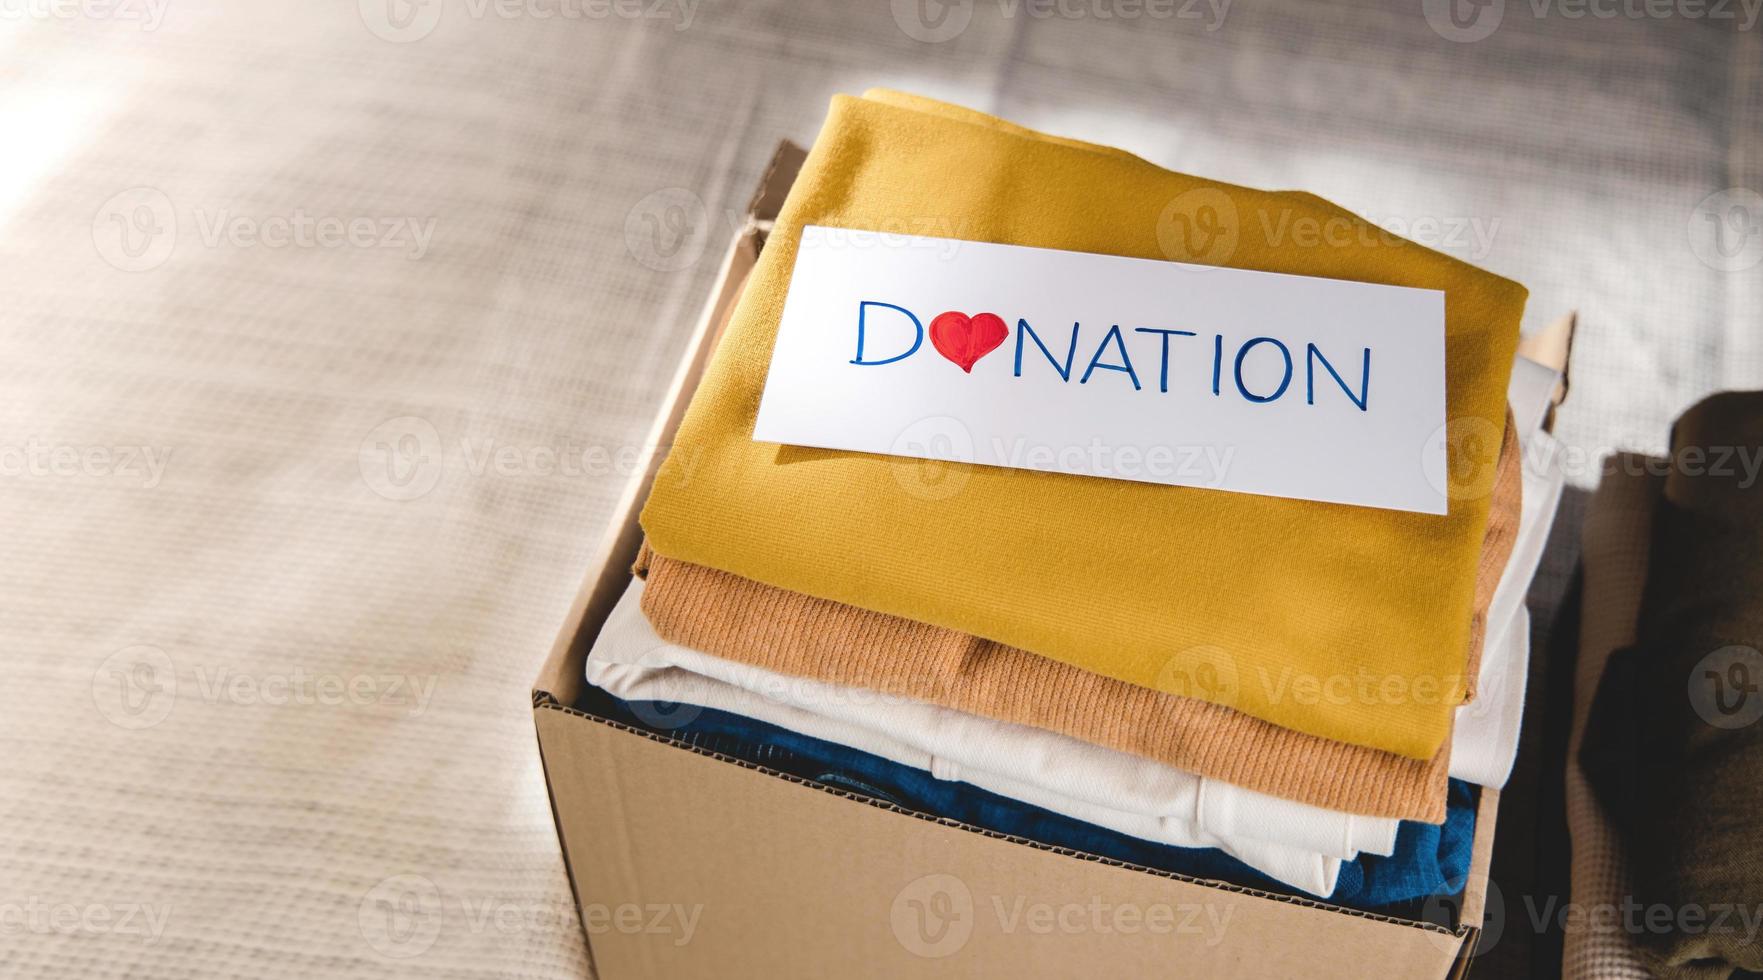 concepto de donación de ropa. caja de tela con etiqueta de donación. preparando ropa vieja usada en casa. vista superior foto